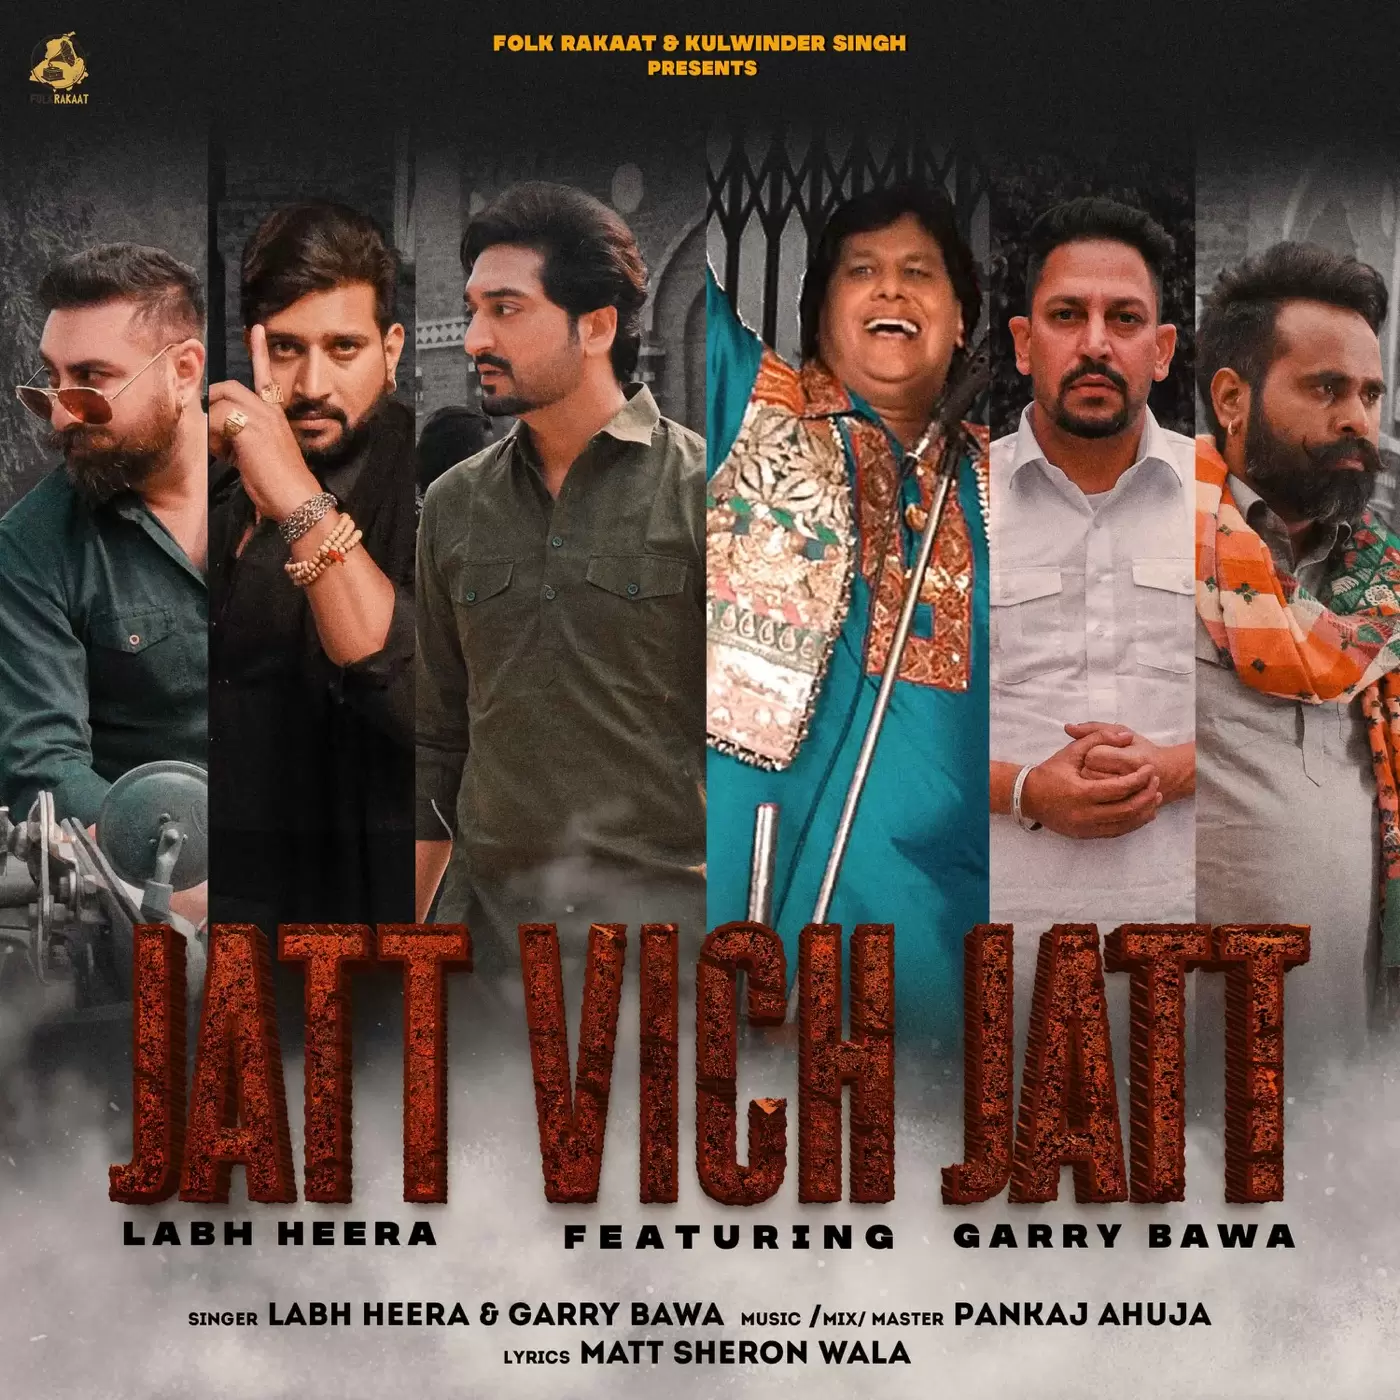 Jatt Vich Jatt Labh Heera Mp3 Download Song - Mr-Punjab